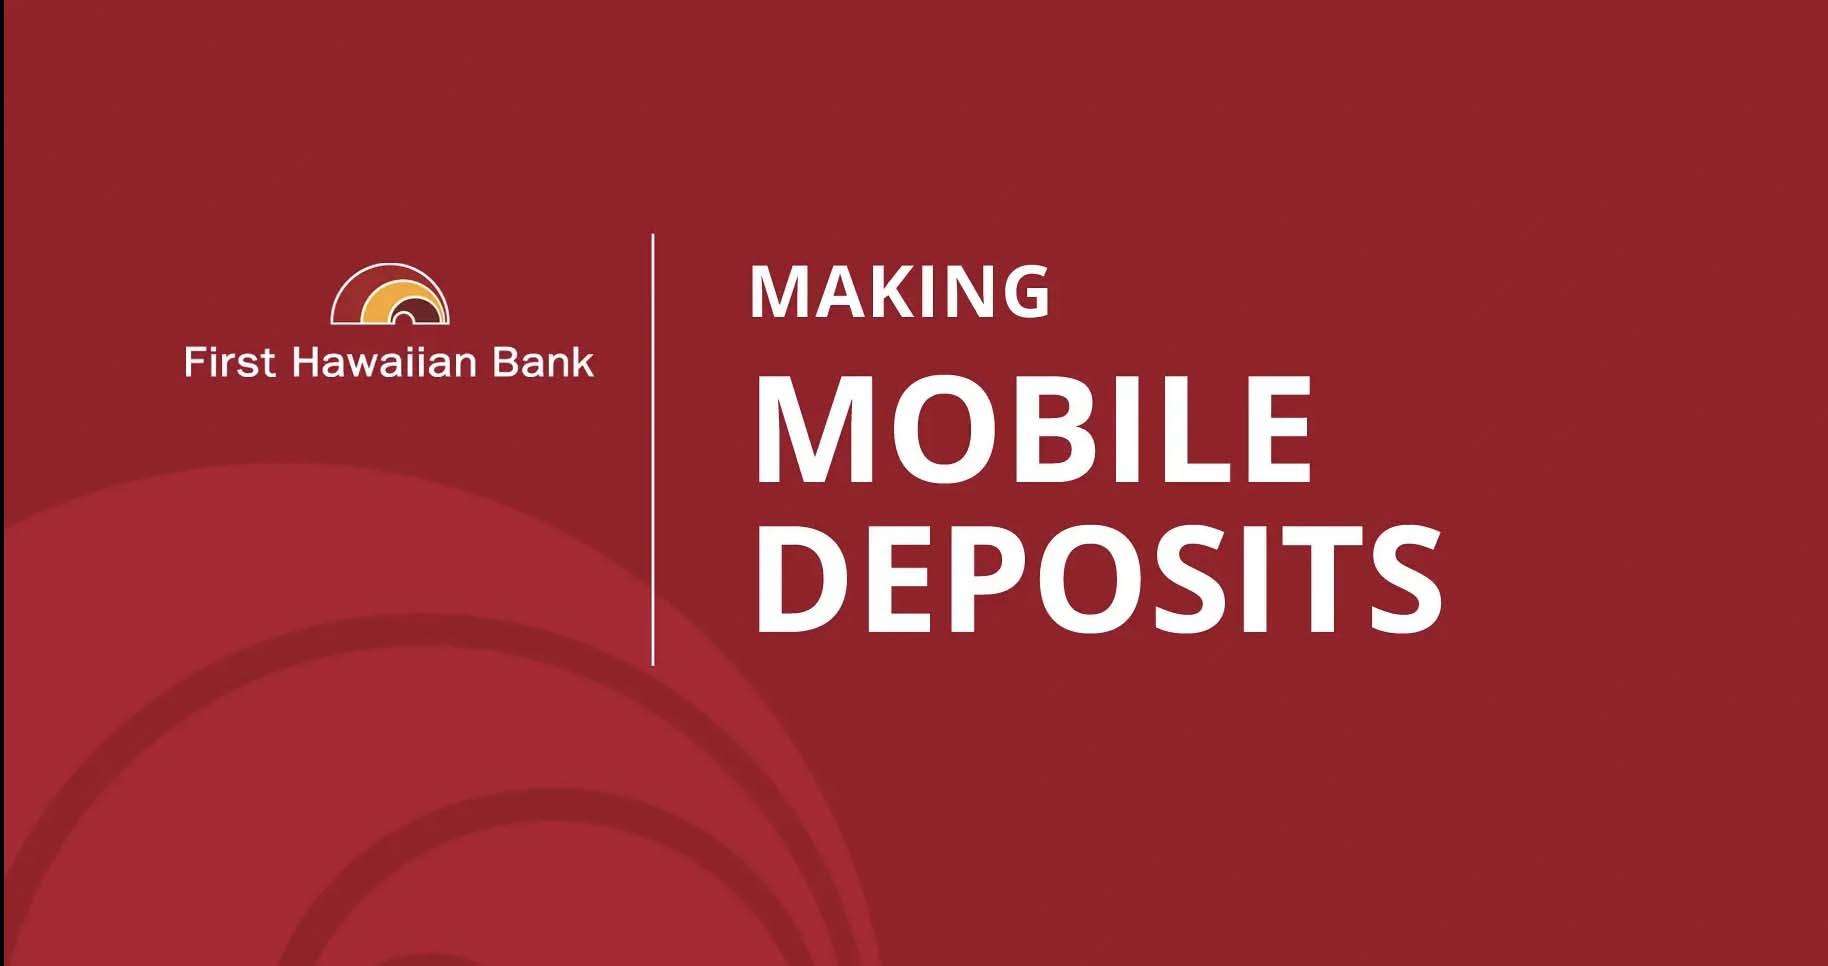 Making Mobile Deposits